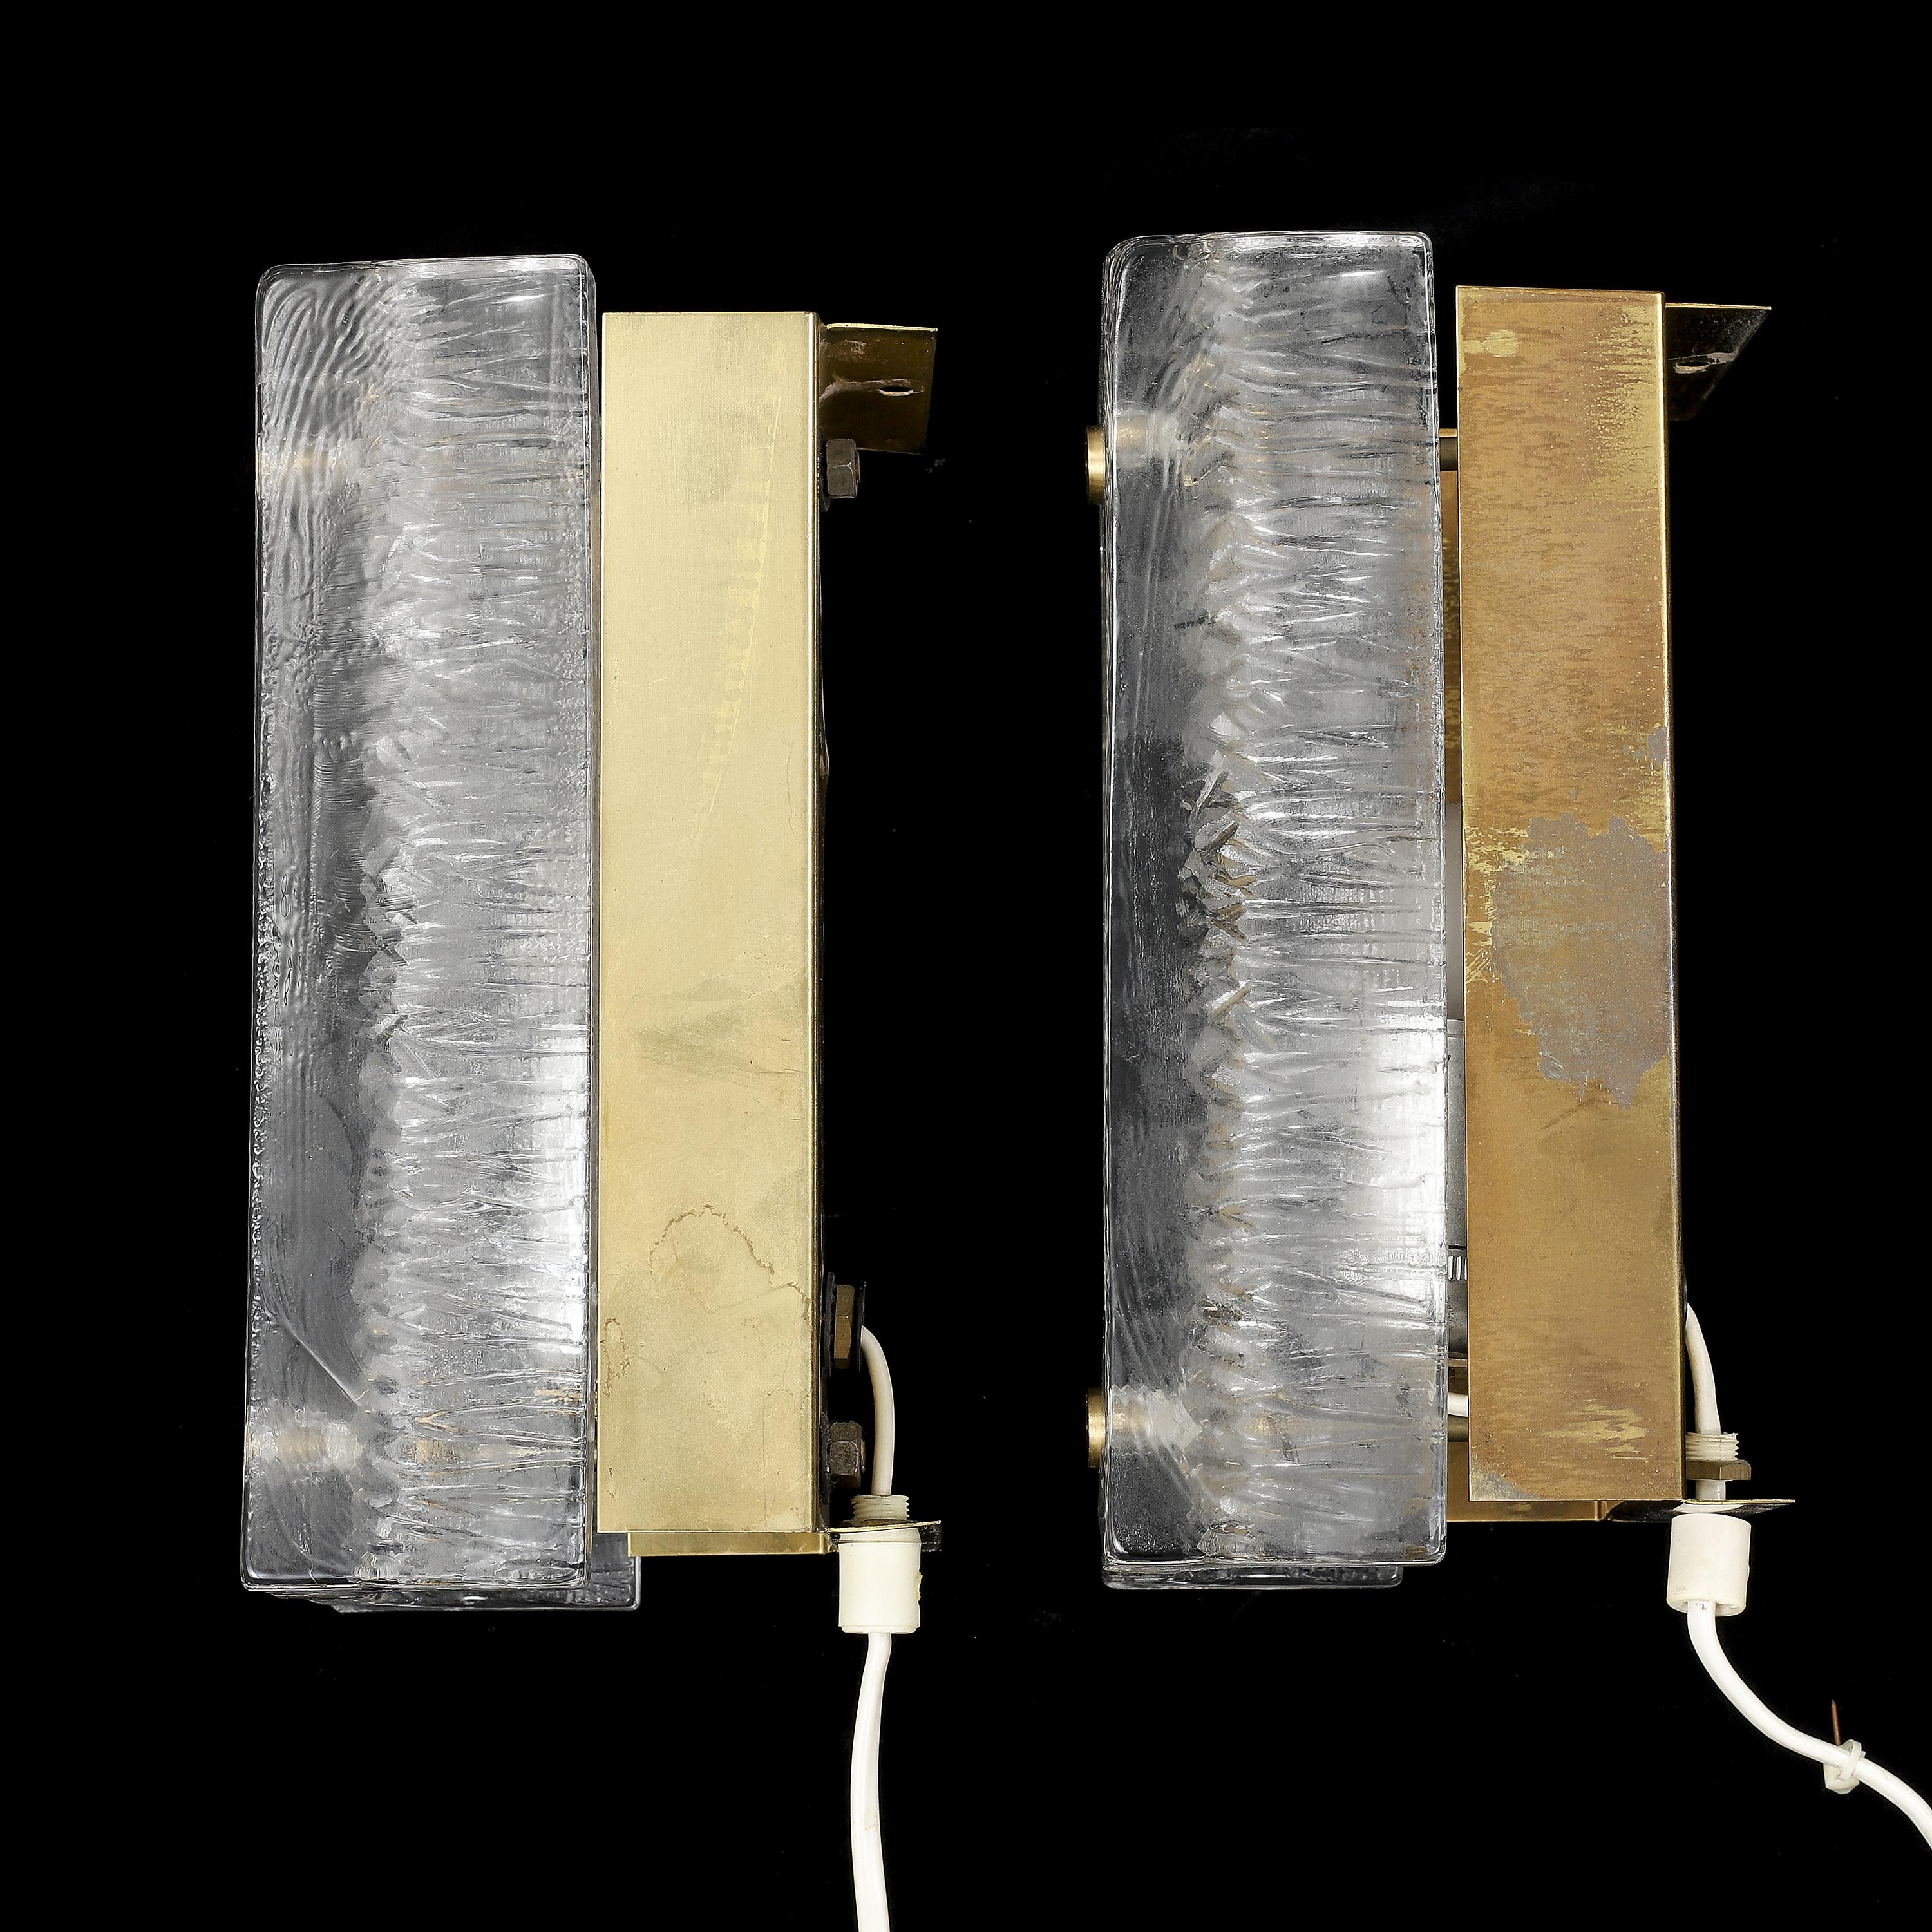 Applique Orrefors  verre moulé et laiton fabriqué en Suède en 1960.
Prix de la paire
en cristal moulé clair, surface extérieure lisse et motif intérieur, les abat-jours en verre reposent sur un cadre en laiton avec des attaches en laiton. Elles